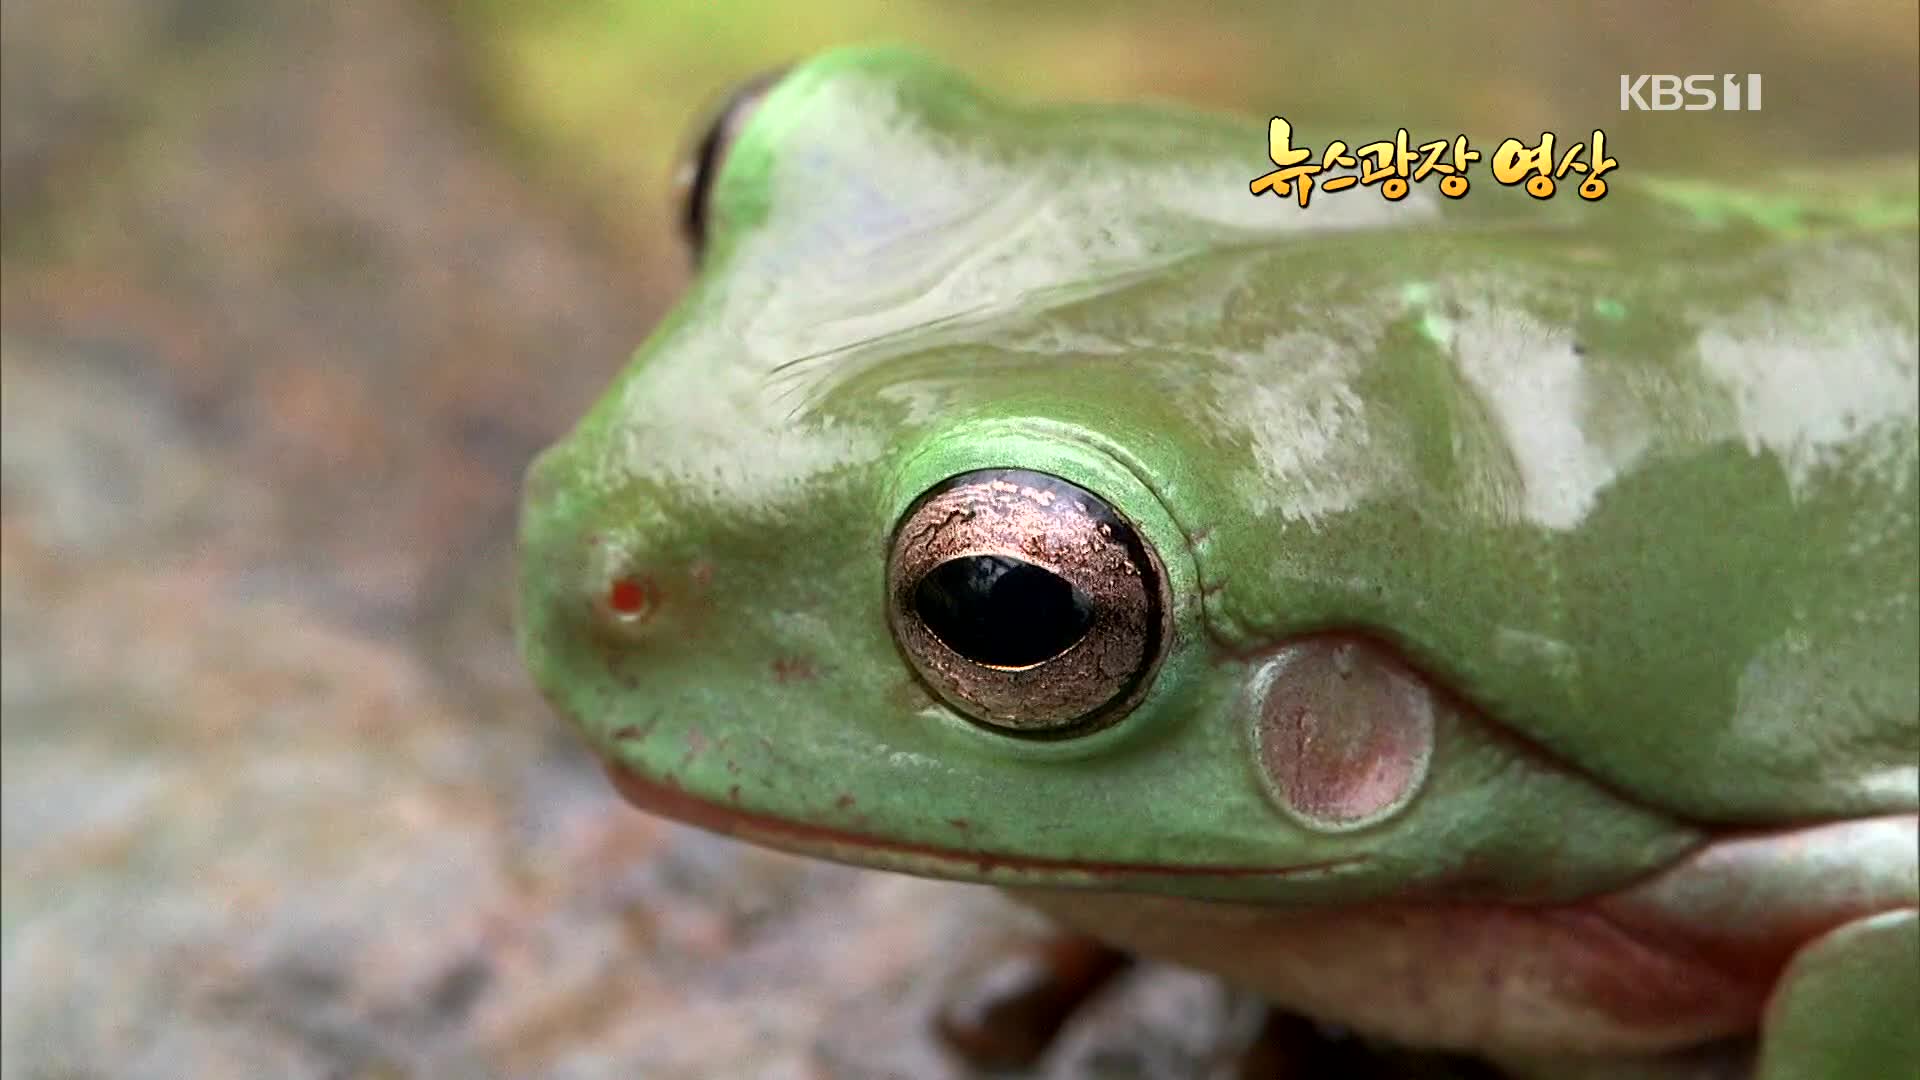 [뉴스광장 영상] 개구리 점프하다